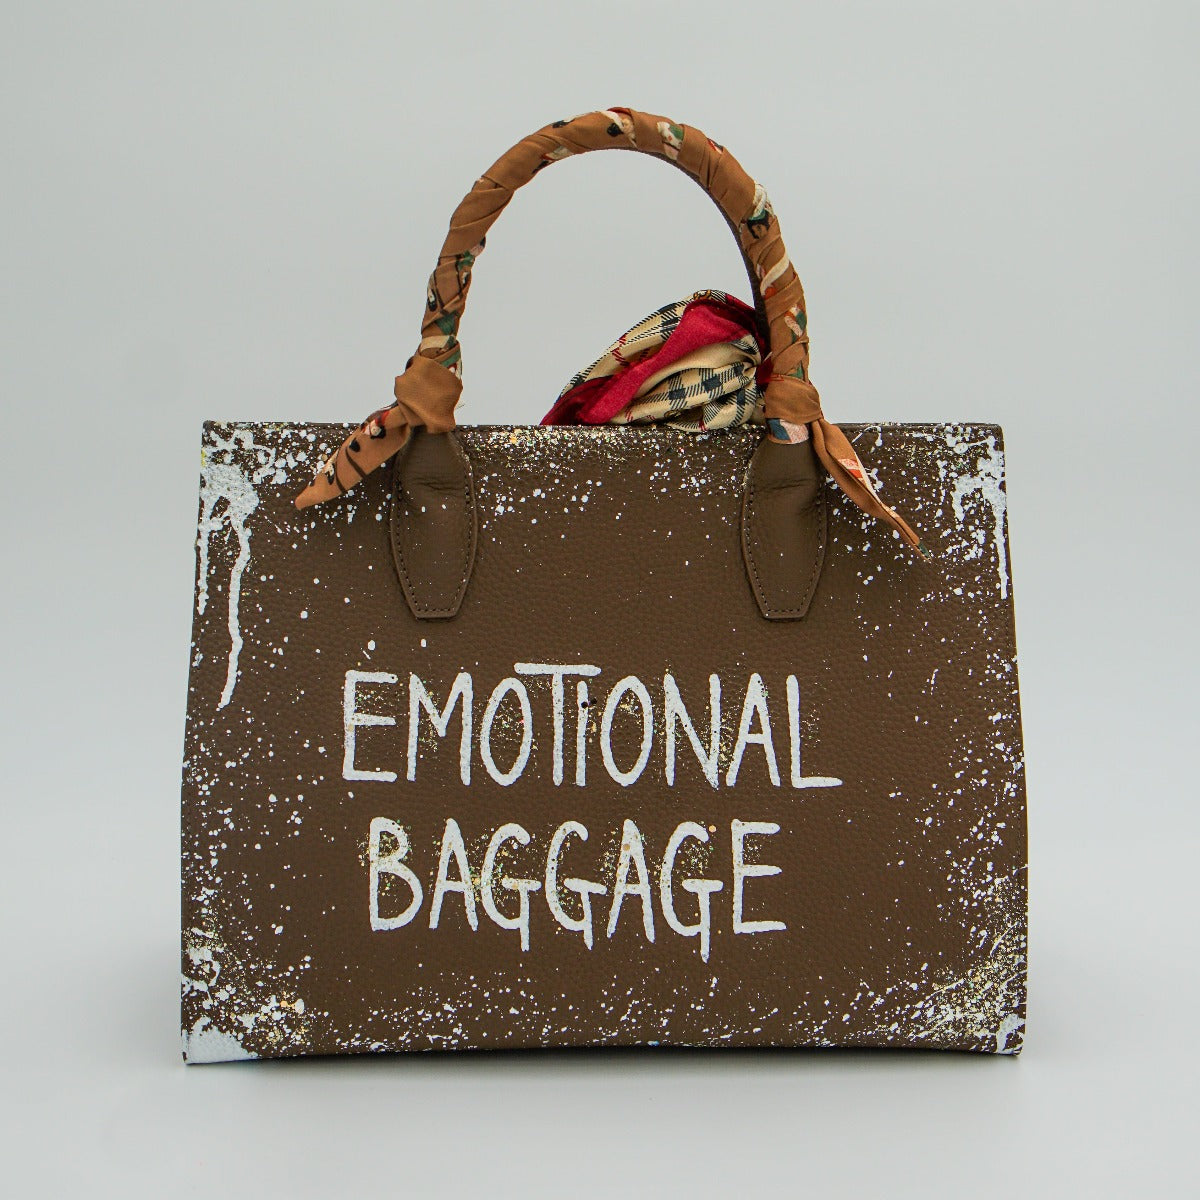 Anca Barbu Sophia Bag, Emotional Baggage, White